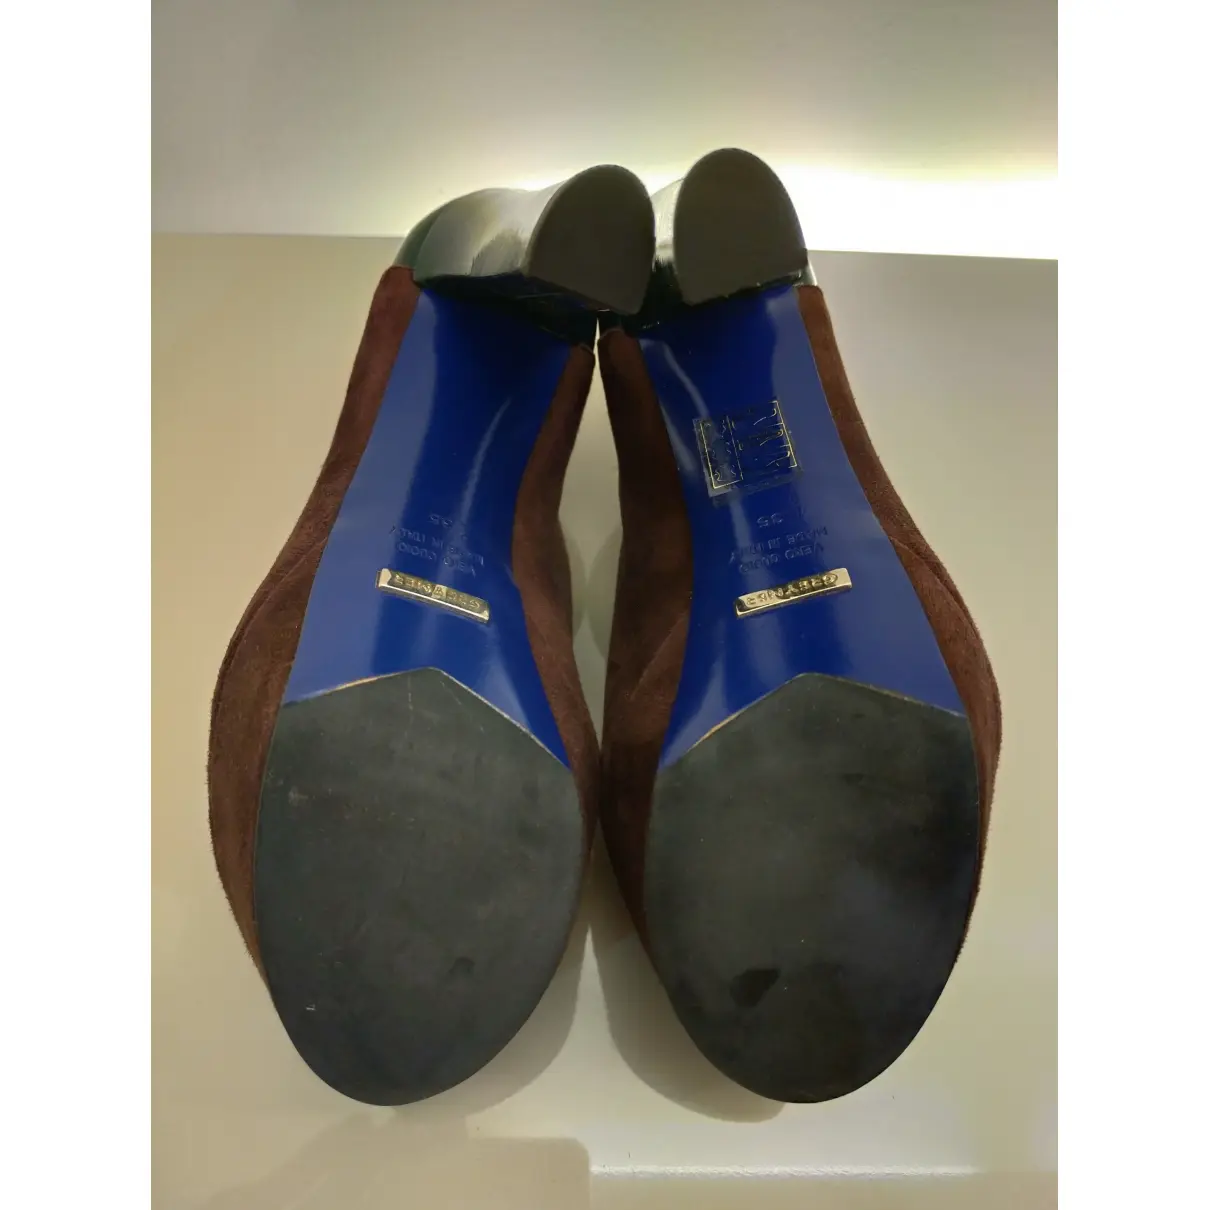 Buy Grey Mer Leather heels online